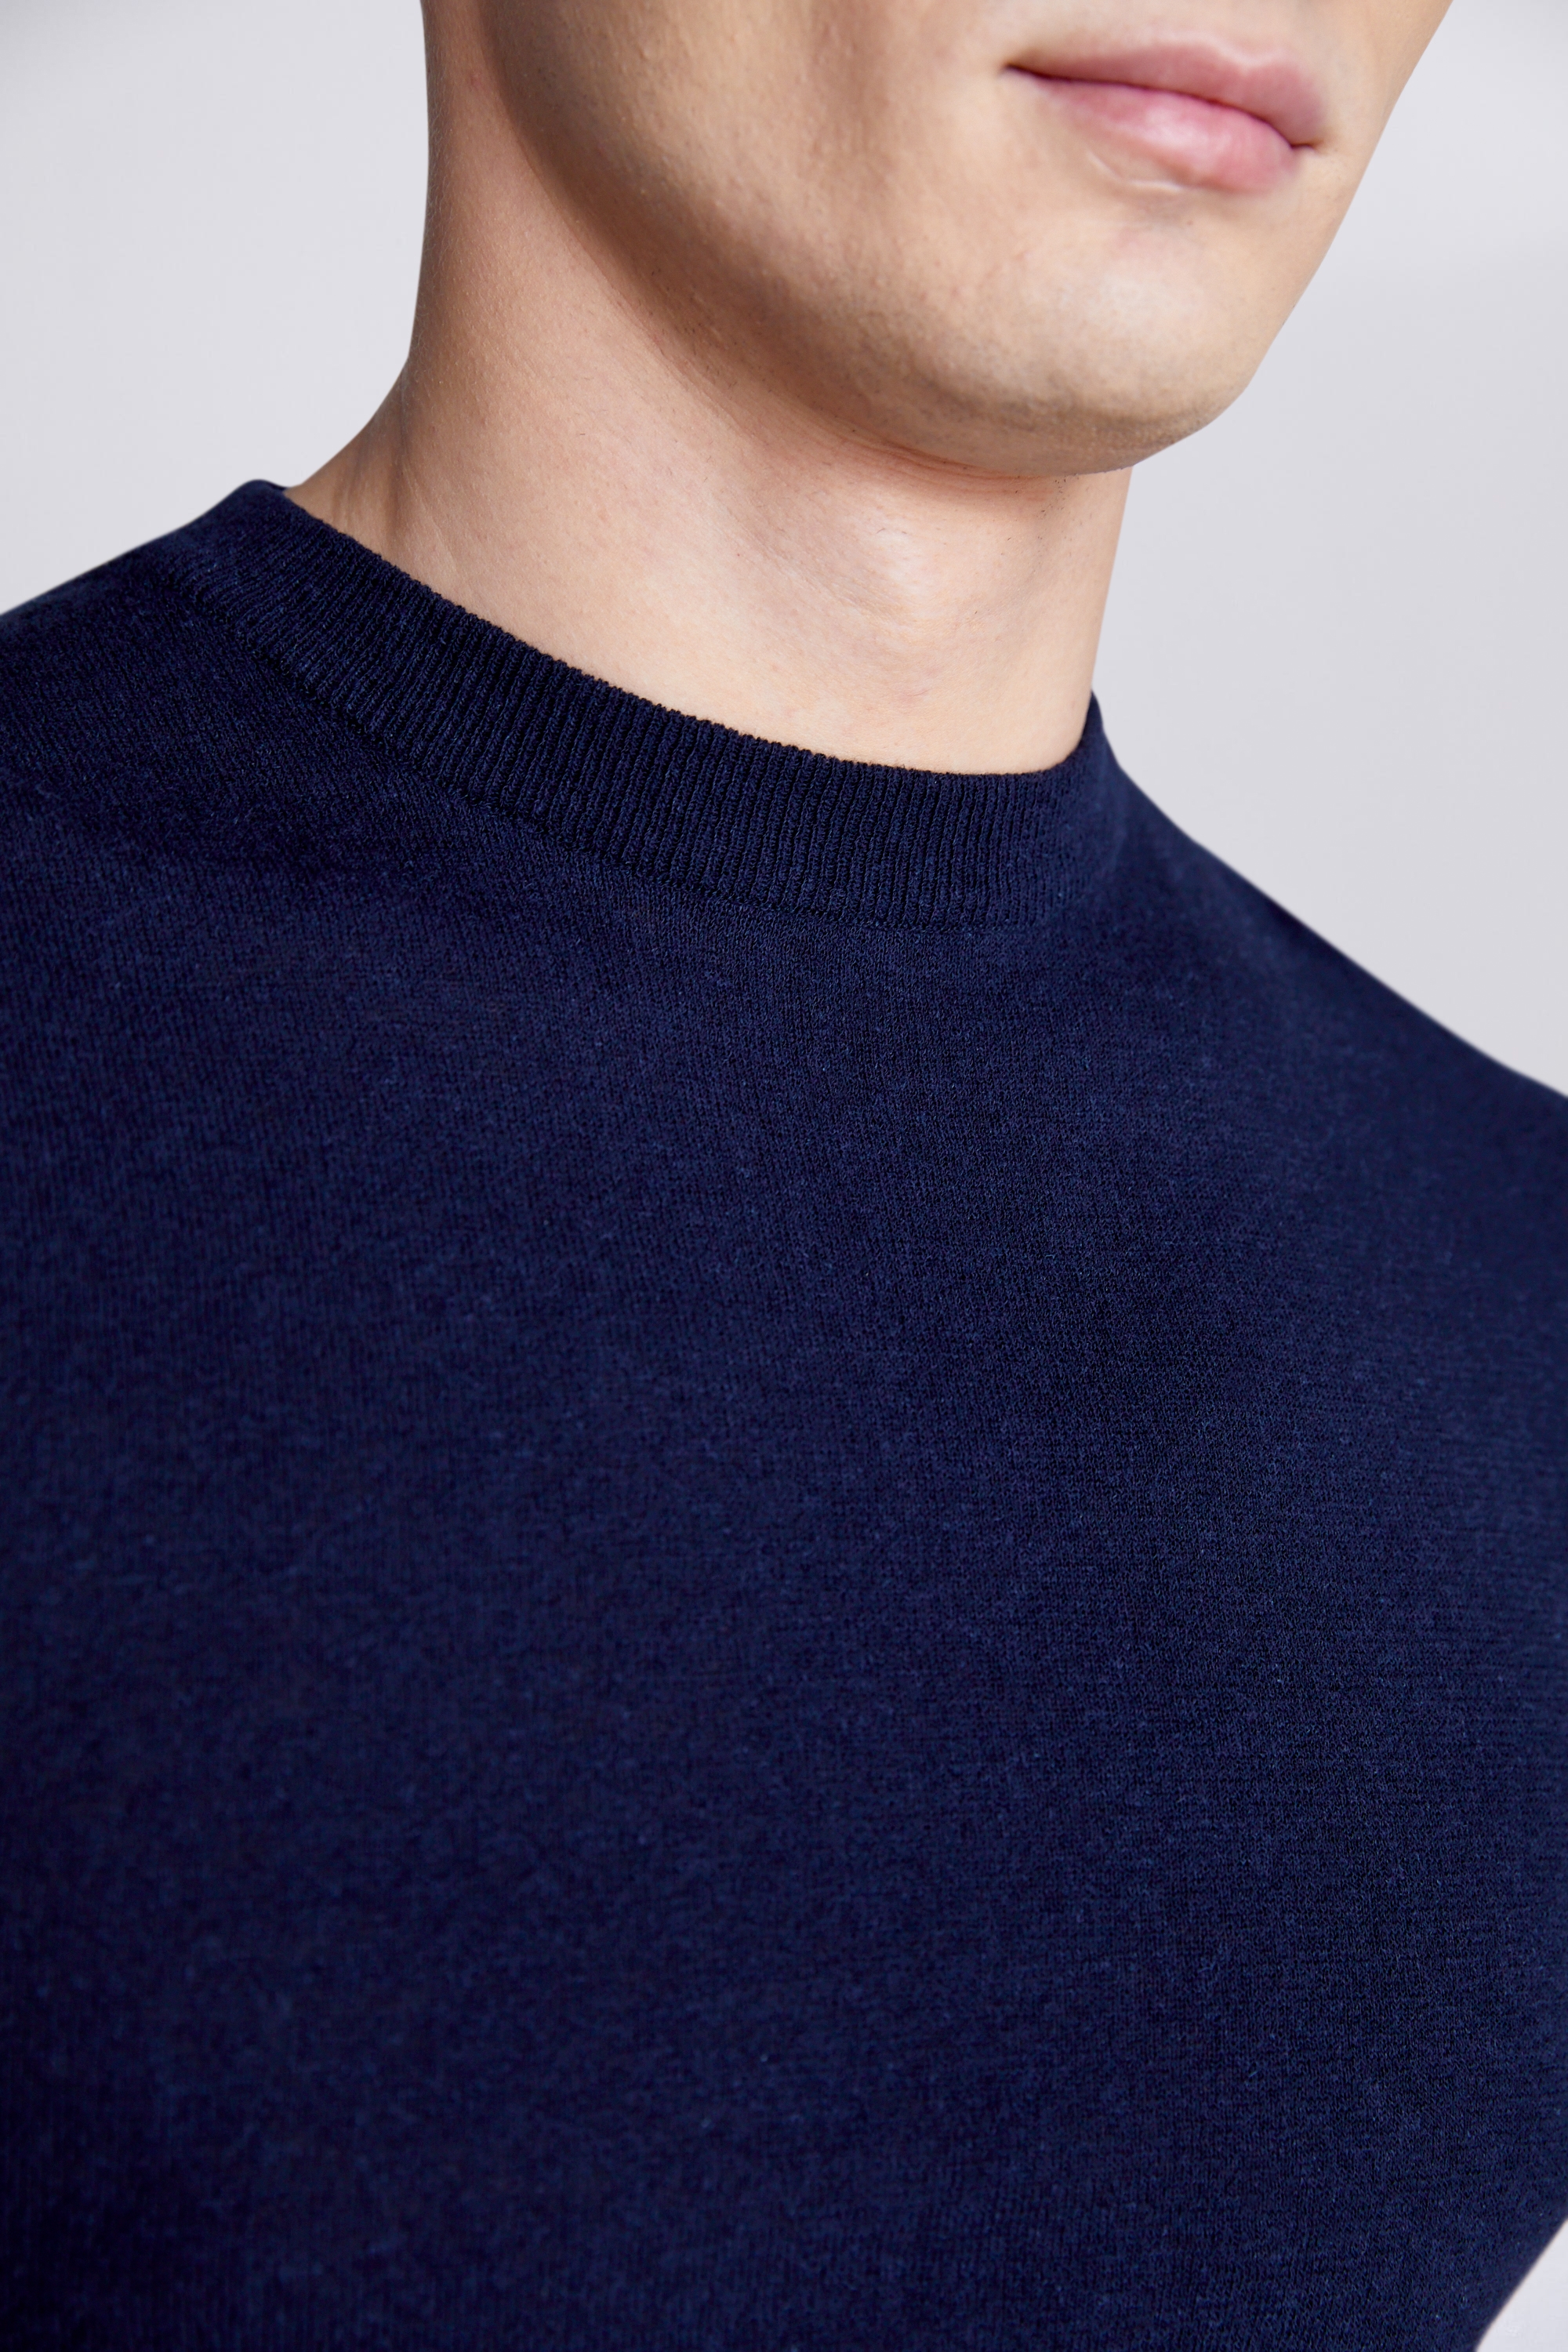 Linen Blend Navy T-shirt | Buy Online at Moss